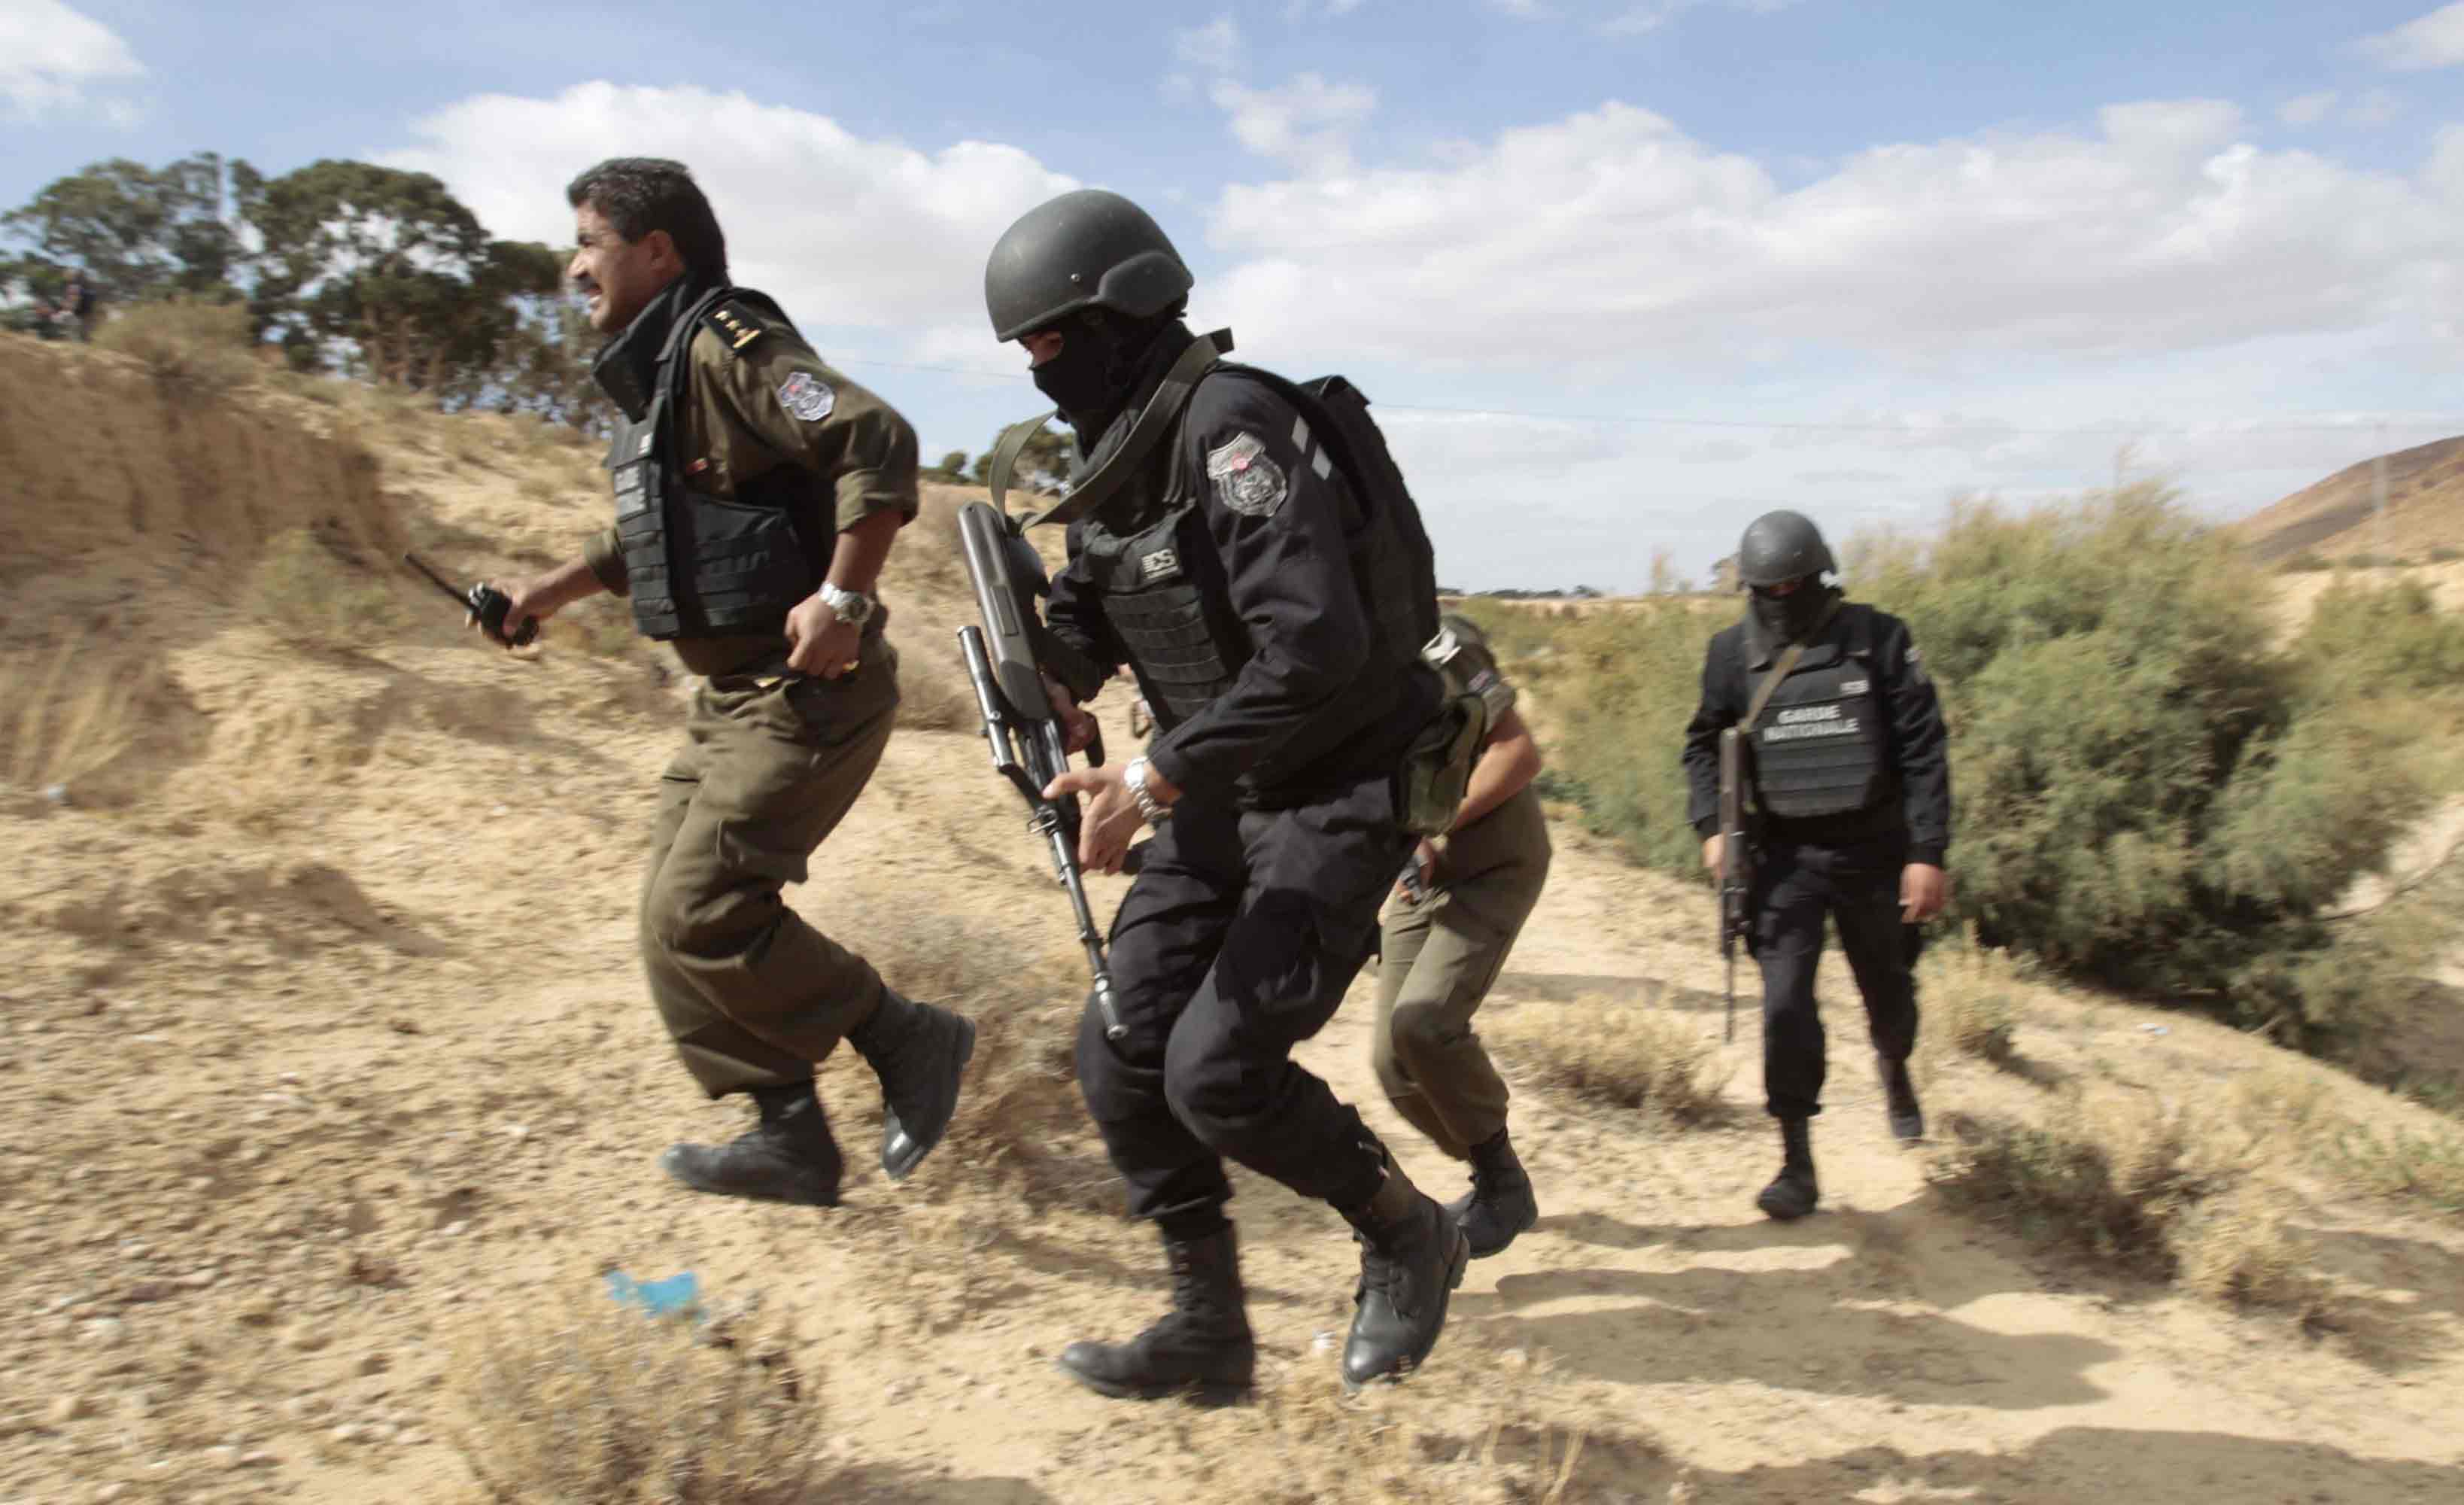 الوحدات العسكرية تواصل تعقب الجماعات الإرهابية في الغابات والمرتفعات في تونس